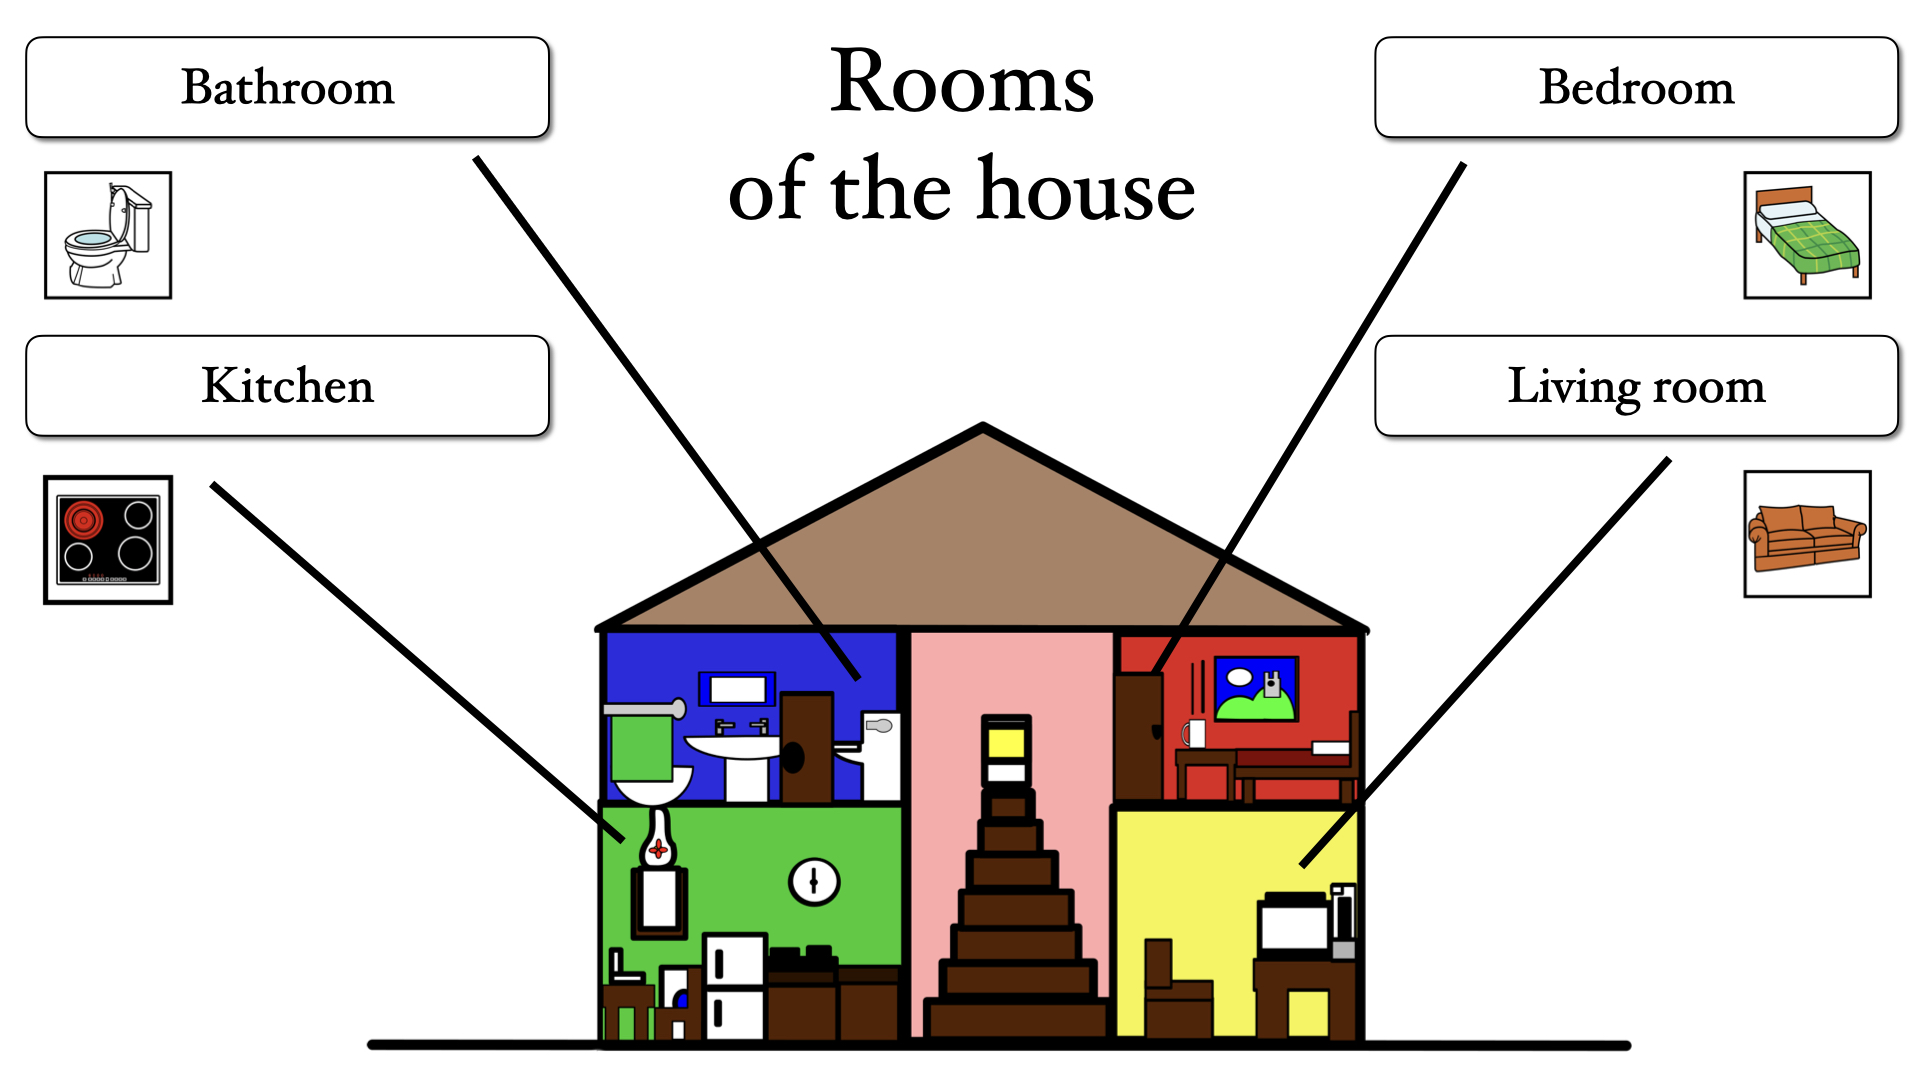 En la imagen aparece el esquema de una casa de dos plantas y cuatro habitaciones. En la planta de abajo, de izquierda a derecha, están la cocina y el salón. En la planta de arriba, también de izquierda a derecha, el baño y el dormitorio. Hay una escalera que comunica las dos plantas